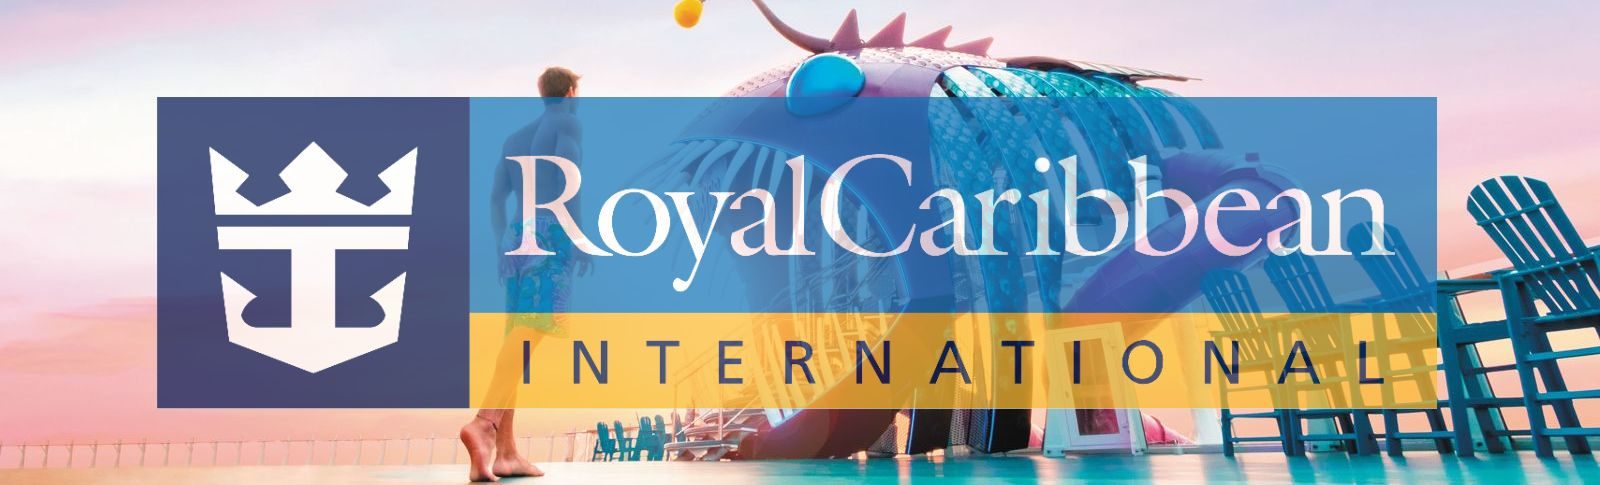 Royal Caribbean získala titul „Celkově nejlepší lodní společnosti“, rekordní 16. rok v řadě